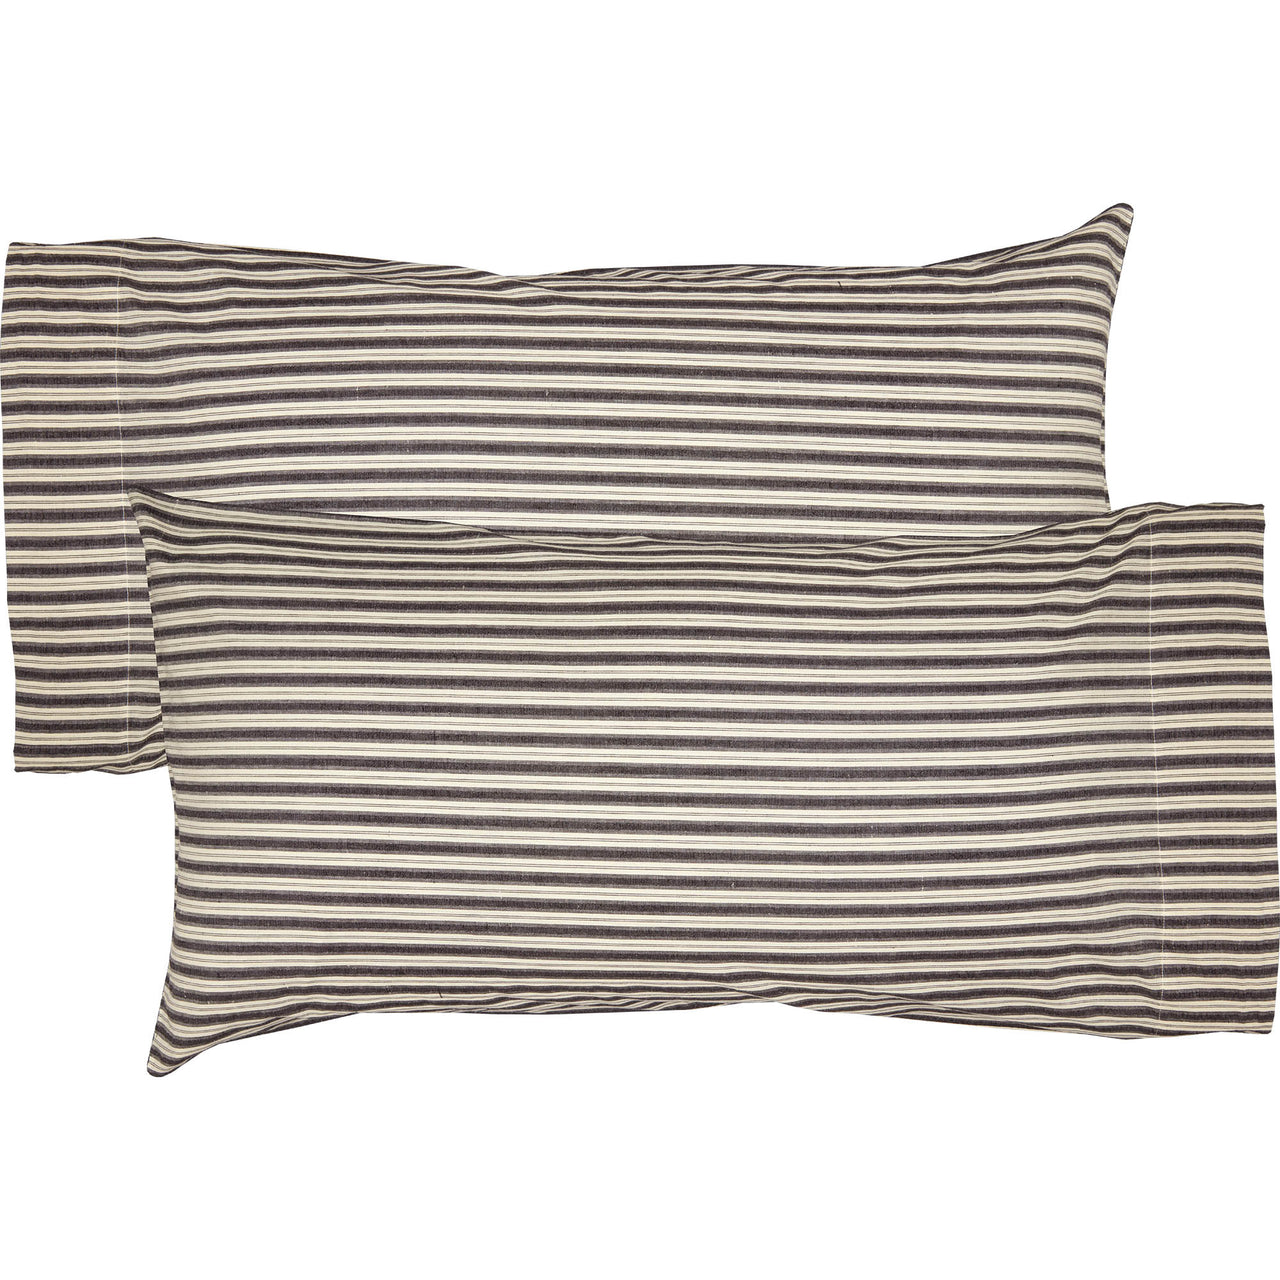 Ashmont Ticking Stripe King Pillow Case Set of 2 21x40 VHC Brands